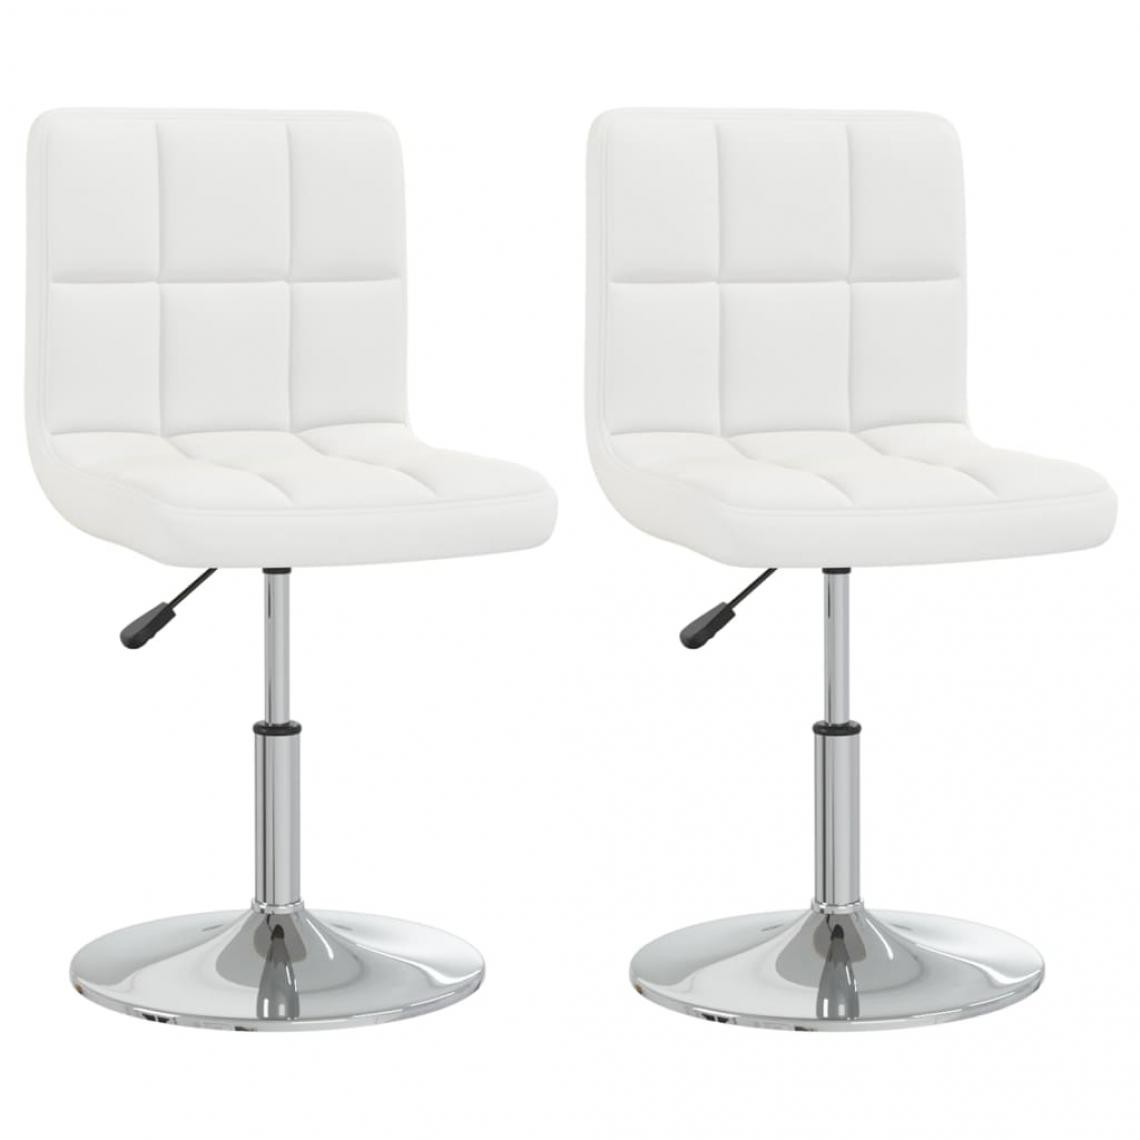 Decoshop26 - Lot de 2 chaises de salle à manger cuisine design contemporain similicuir blanc CDS020202 - Chaises